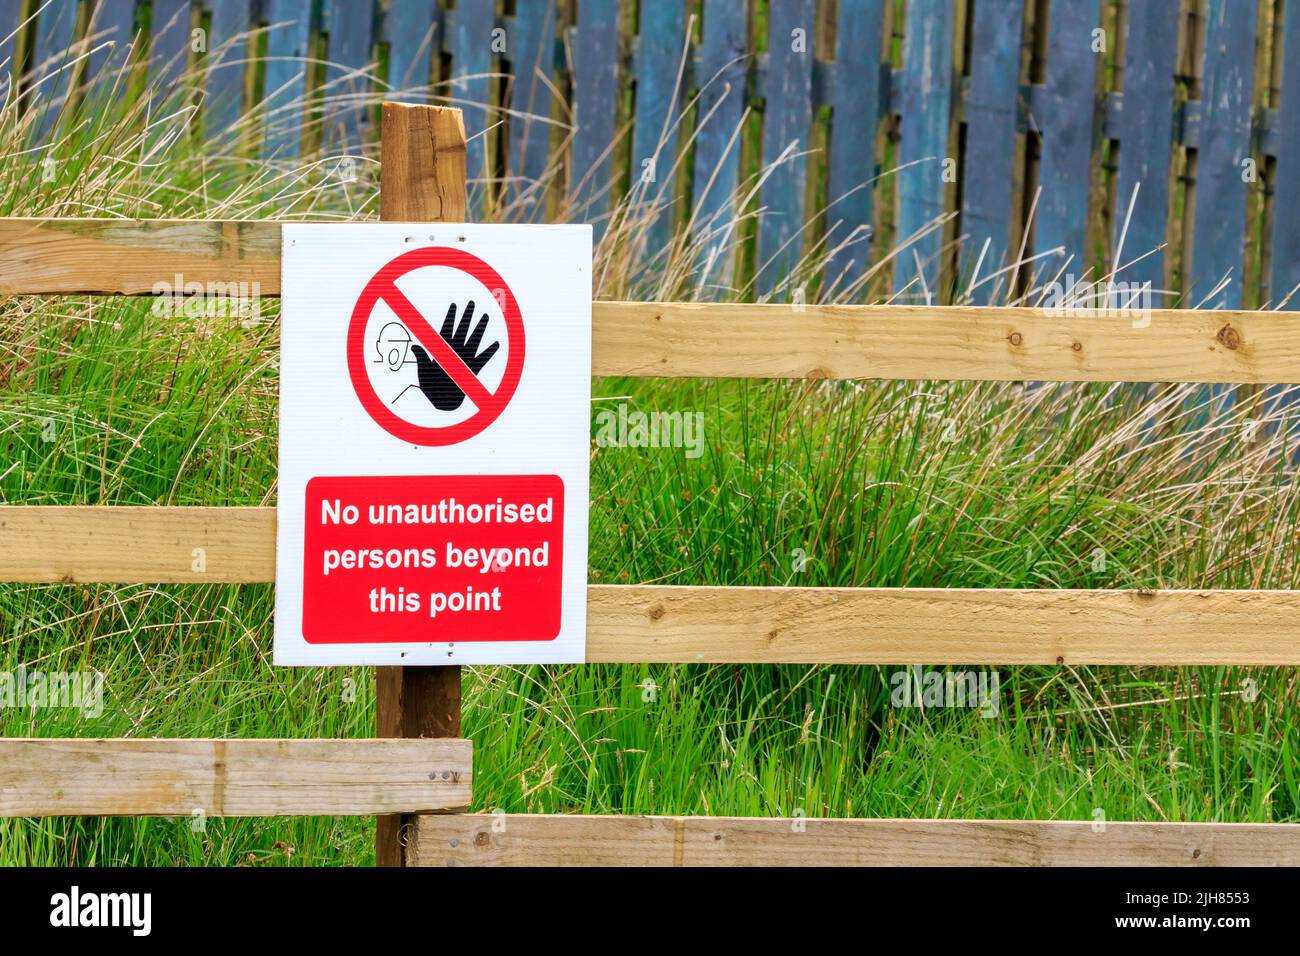 Non devono essere presenti persone non autorizzate oltre questo segno puntato su una recinzione in legno Foto Stock